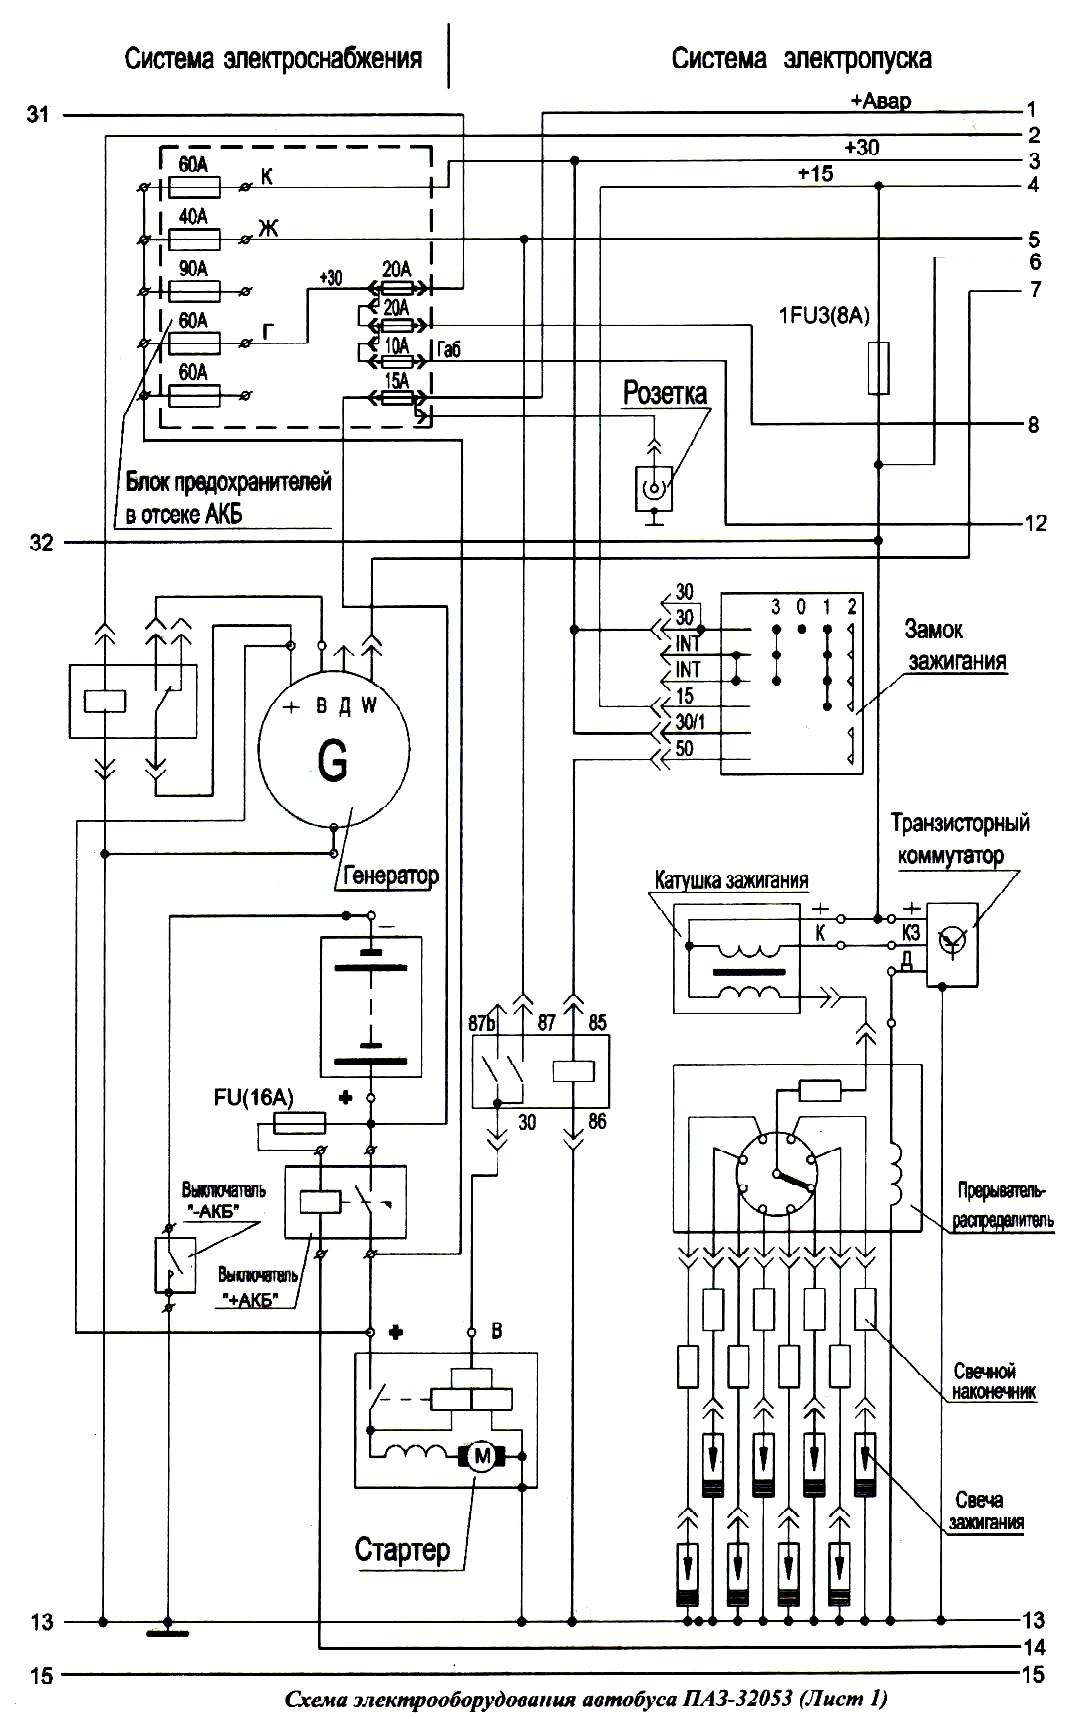 Схема системы электроснабжения и система электропуска